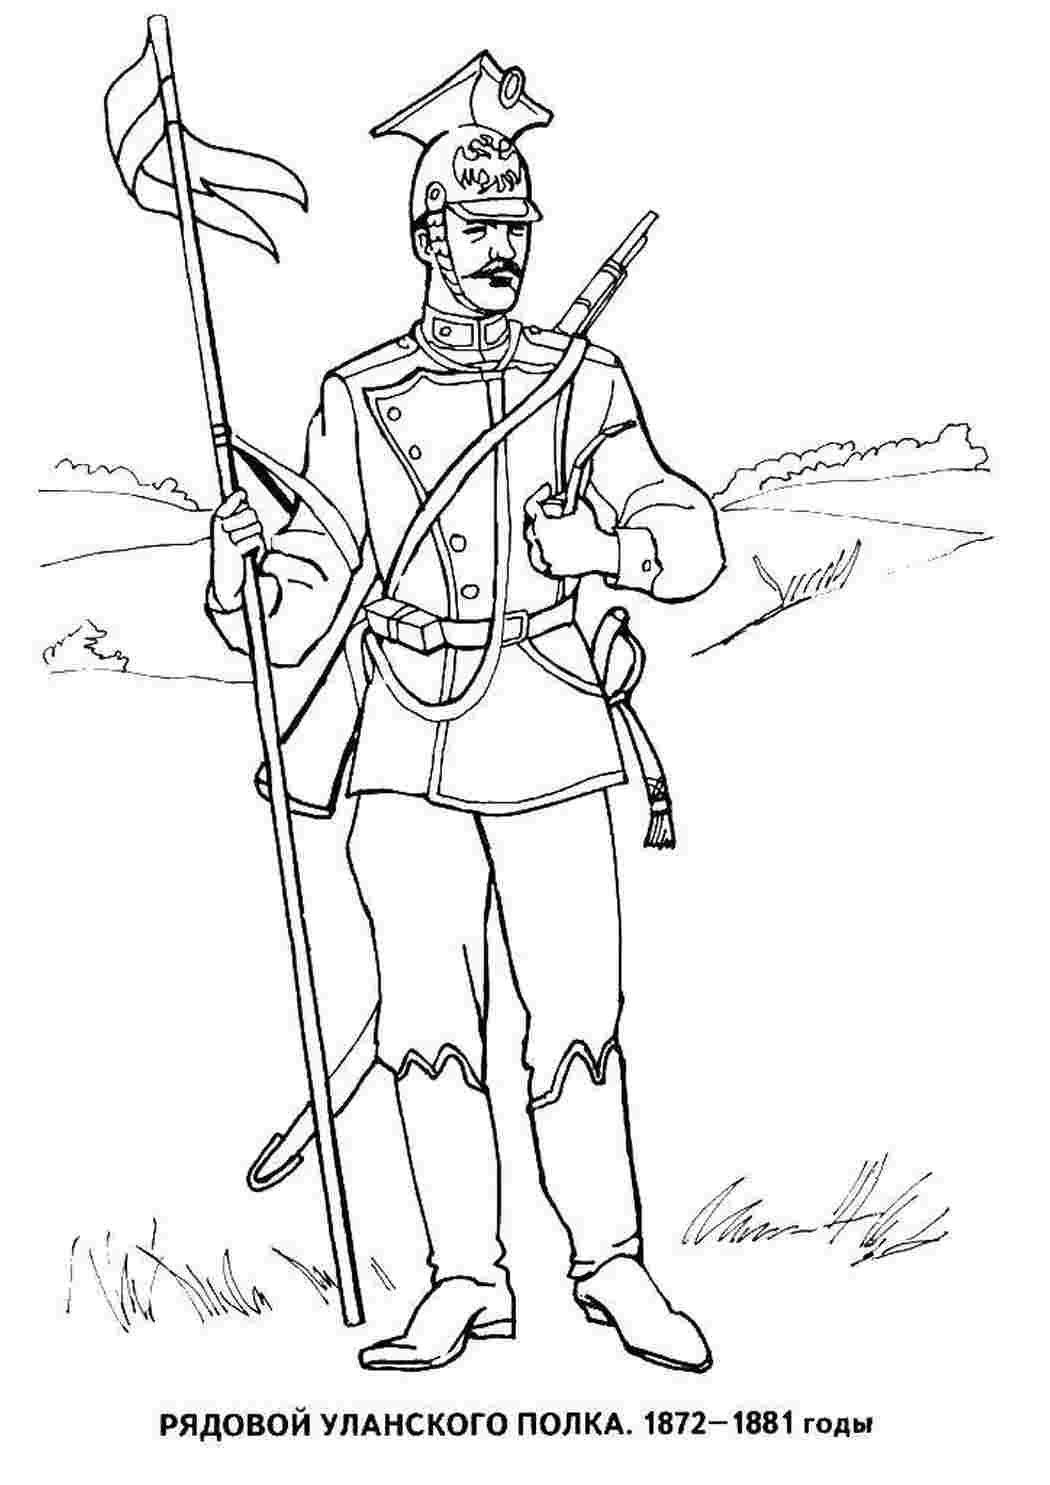 Рядовой Уланского полка 1872 1881